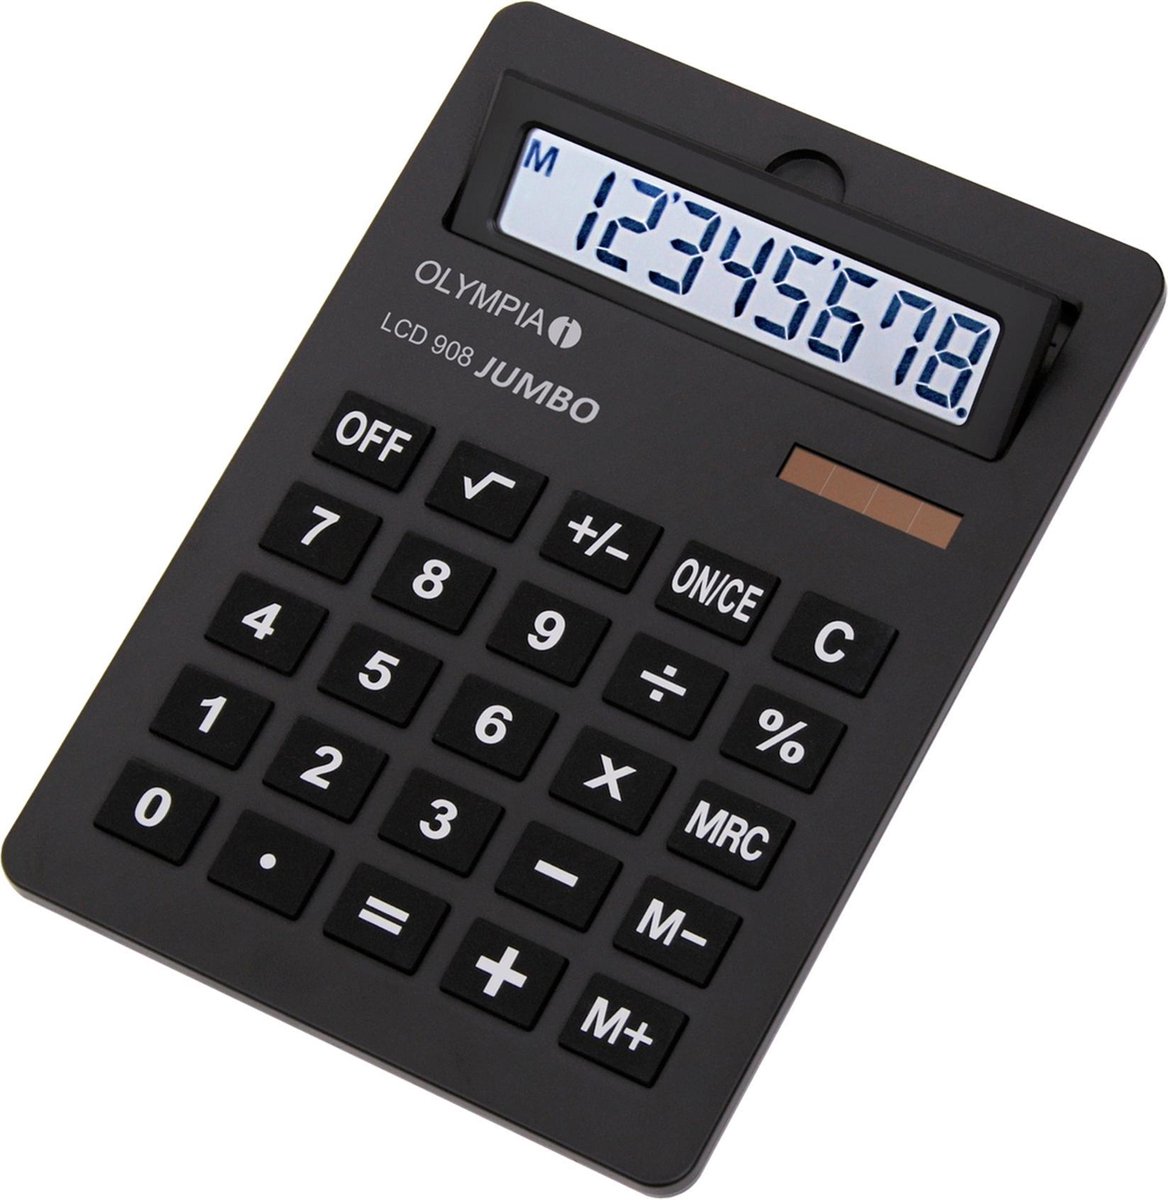 Olympia LCD 908 Jumbo Desktop Rekenmachine met display Zwart calculator